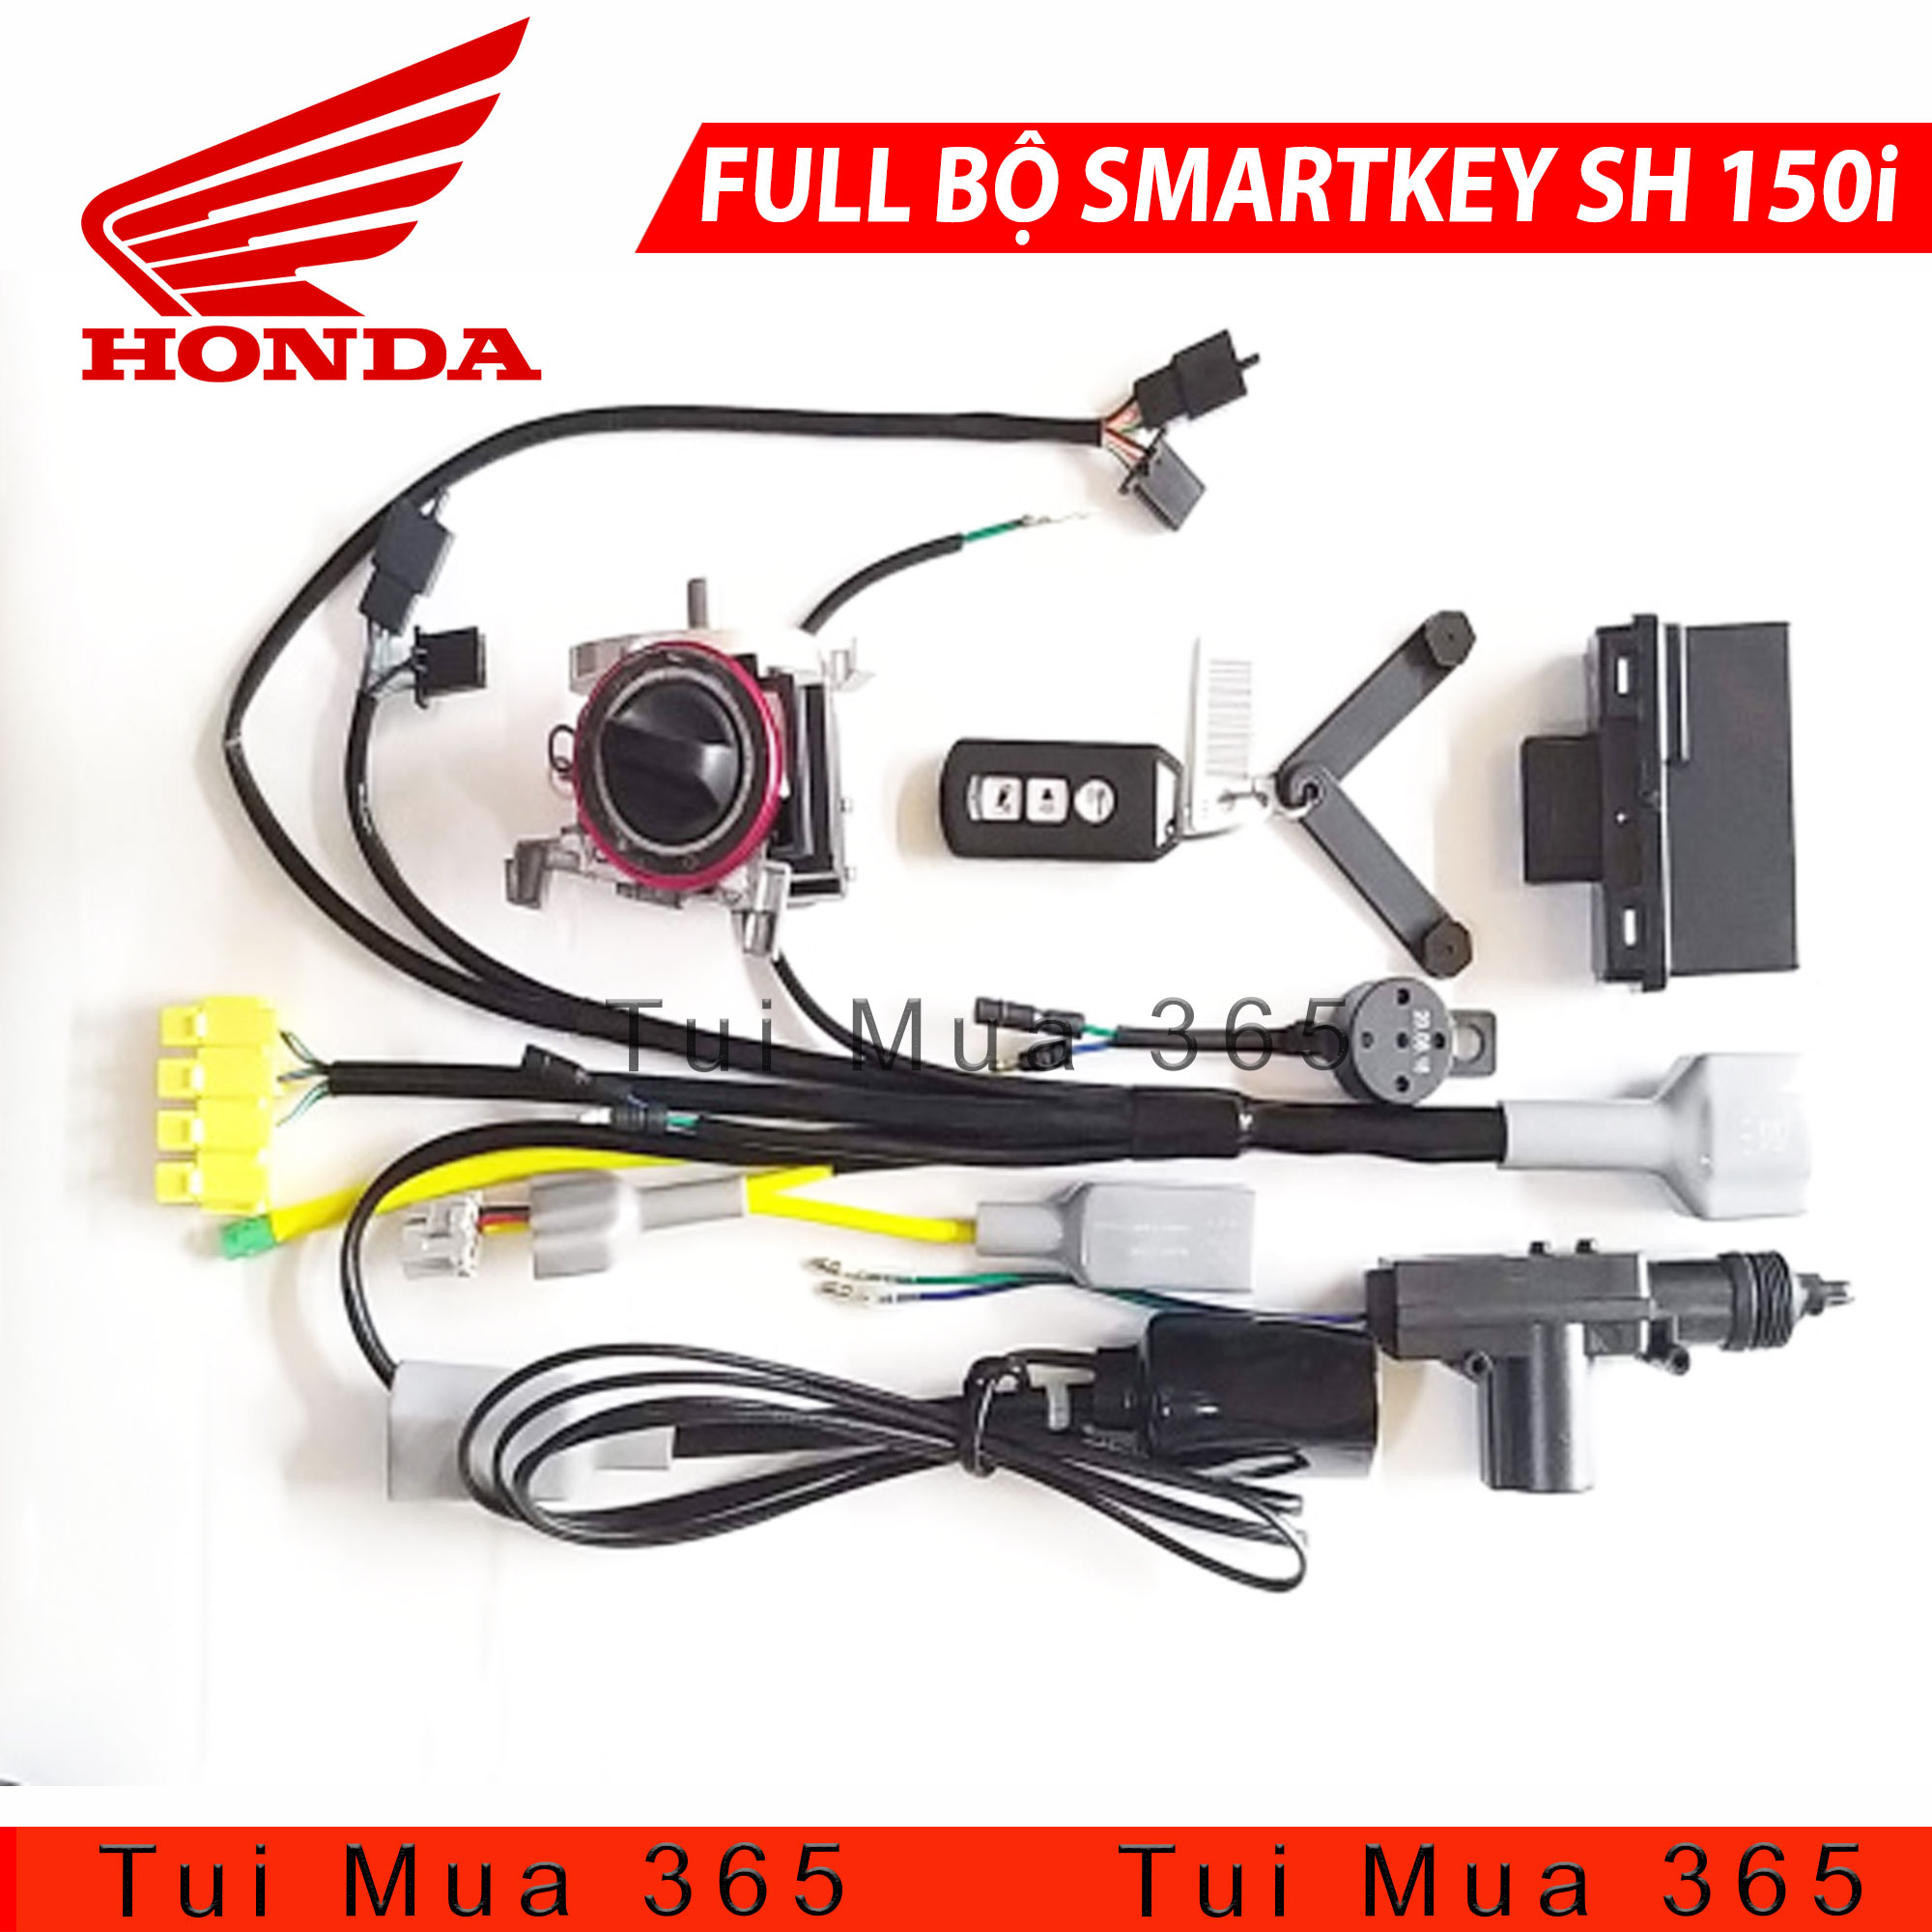 Full Bộ Smartkey Cho Honda SH 150i - CHẤT LƯỢNG - UY TÍN - AN TÂM